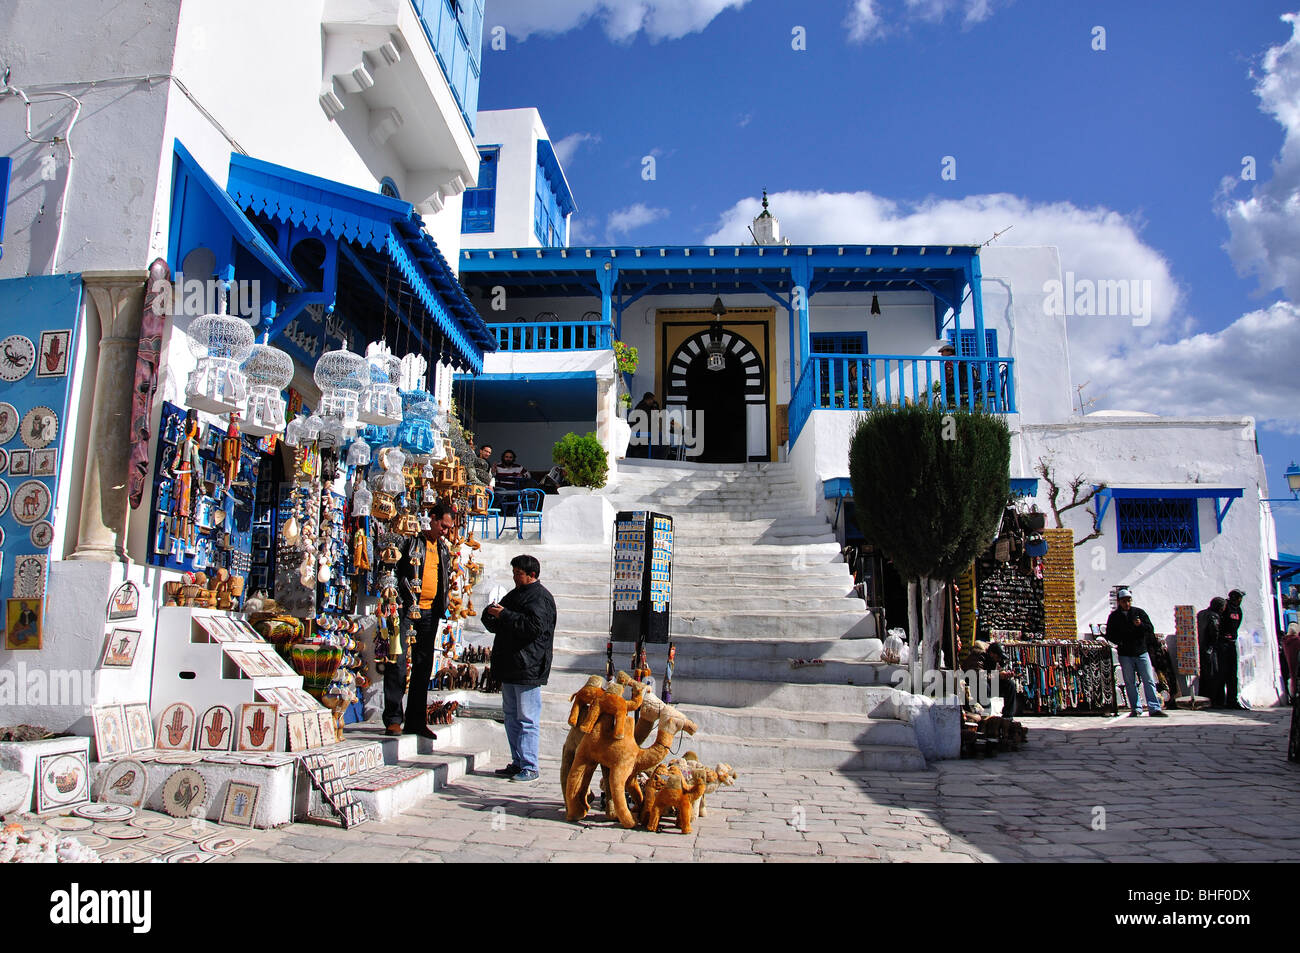 Rue principale avec boutique de souvenirs, Sidi Bou Said, Tunis, Tunisie Gouvernorat Banque D'Images